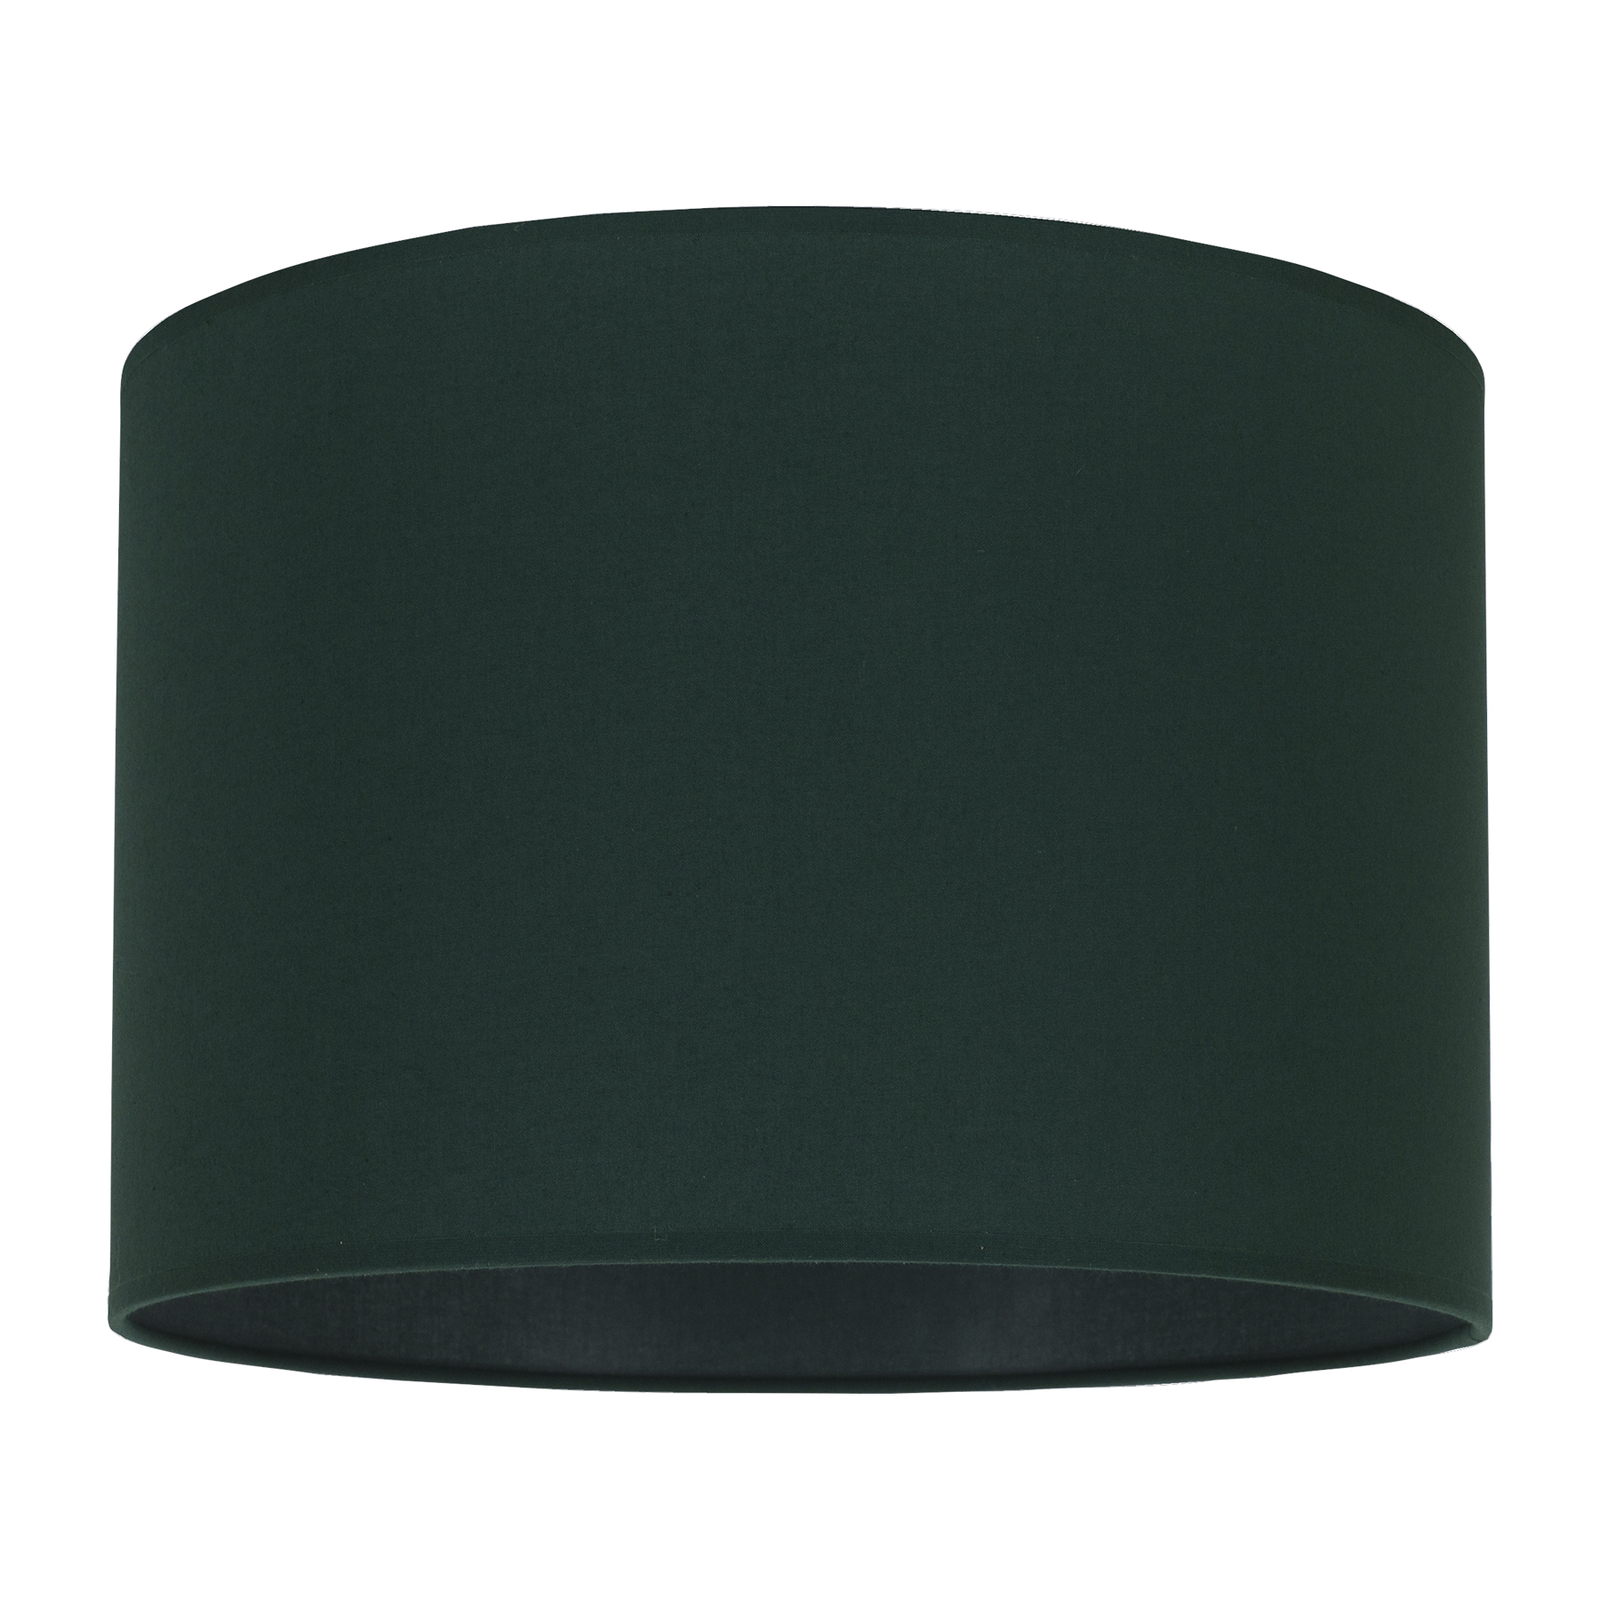 Lampenschirm Roller, grün, Ø 25 cm, Höhe 18 cm